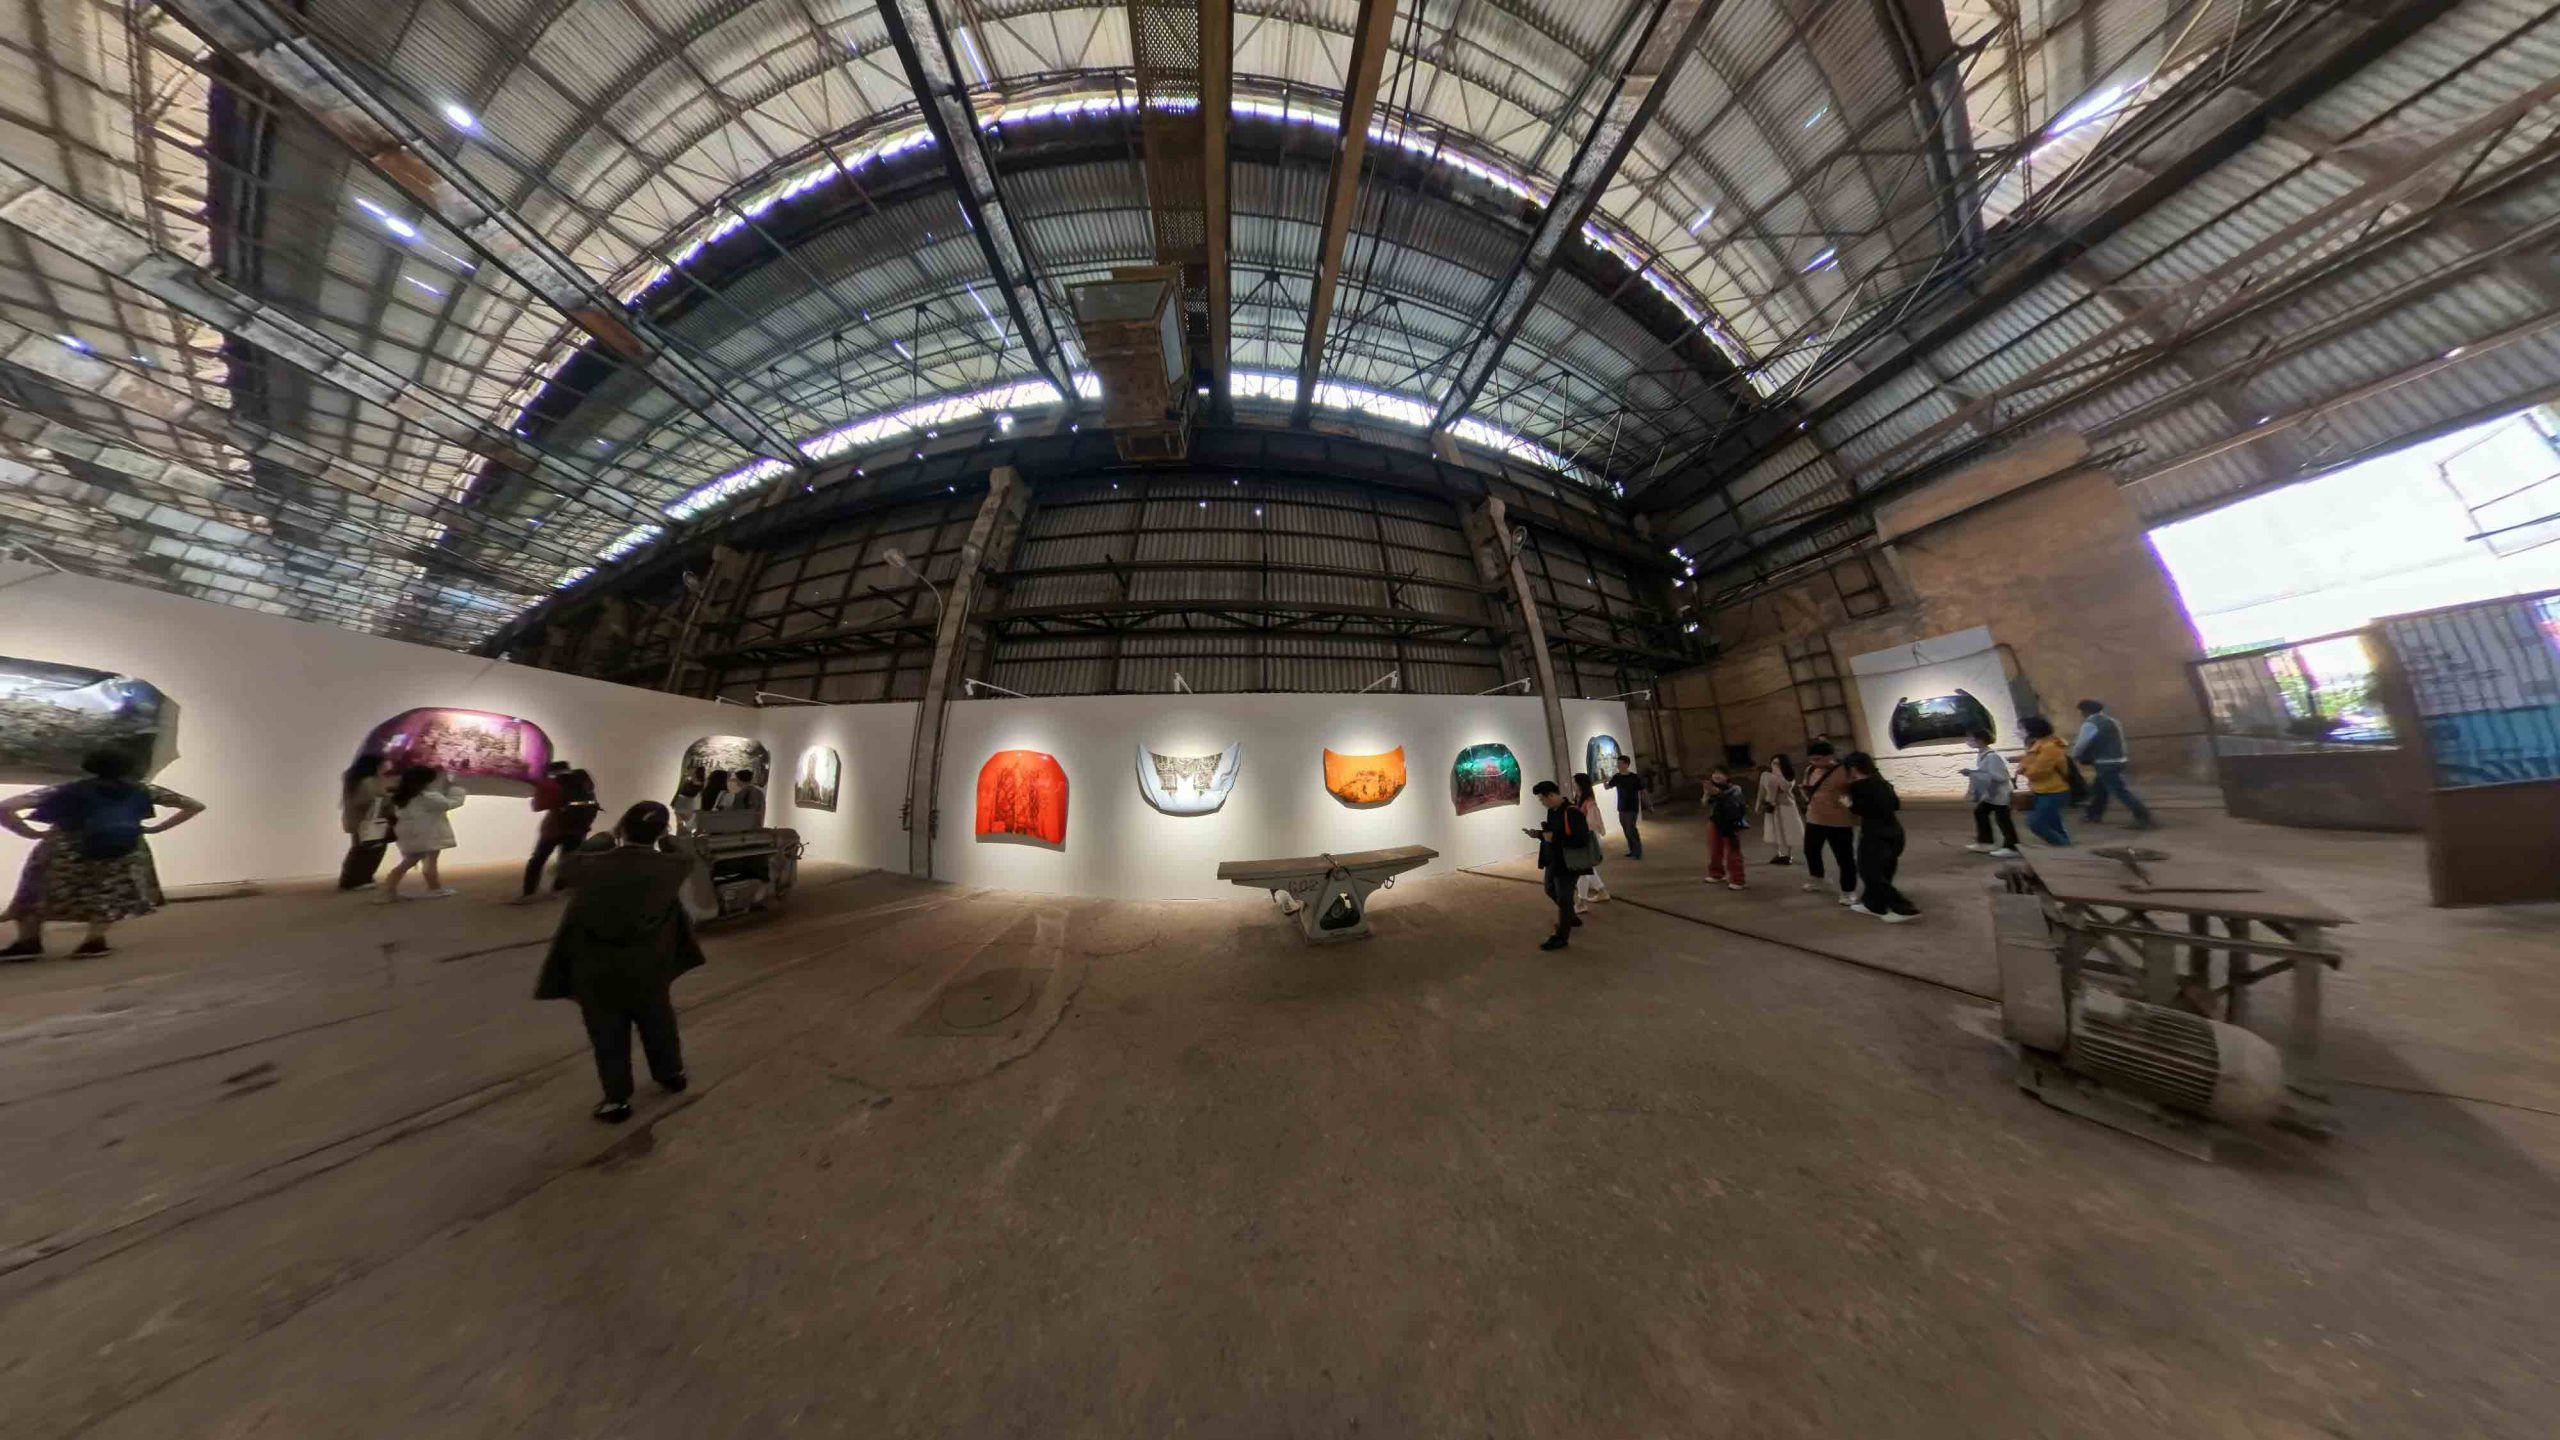 Hình ảnh 360 độ được ghi lại tại triển lãm “Thủy Phủ” bằng Insta360 X3